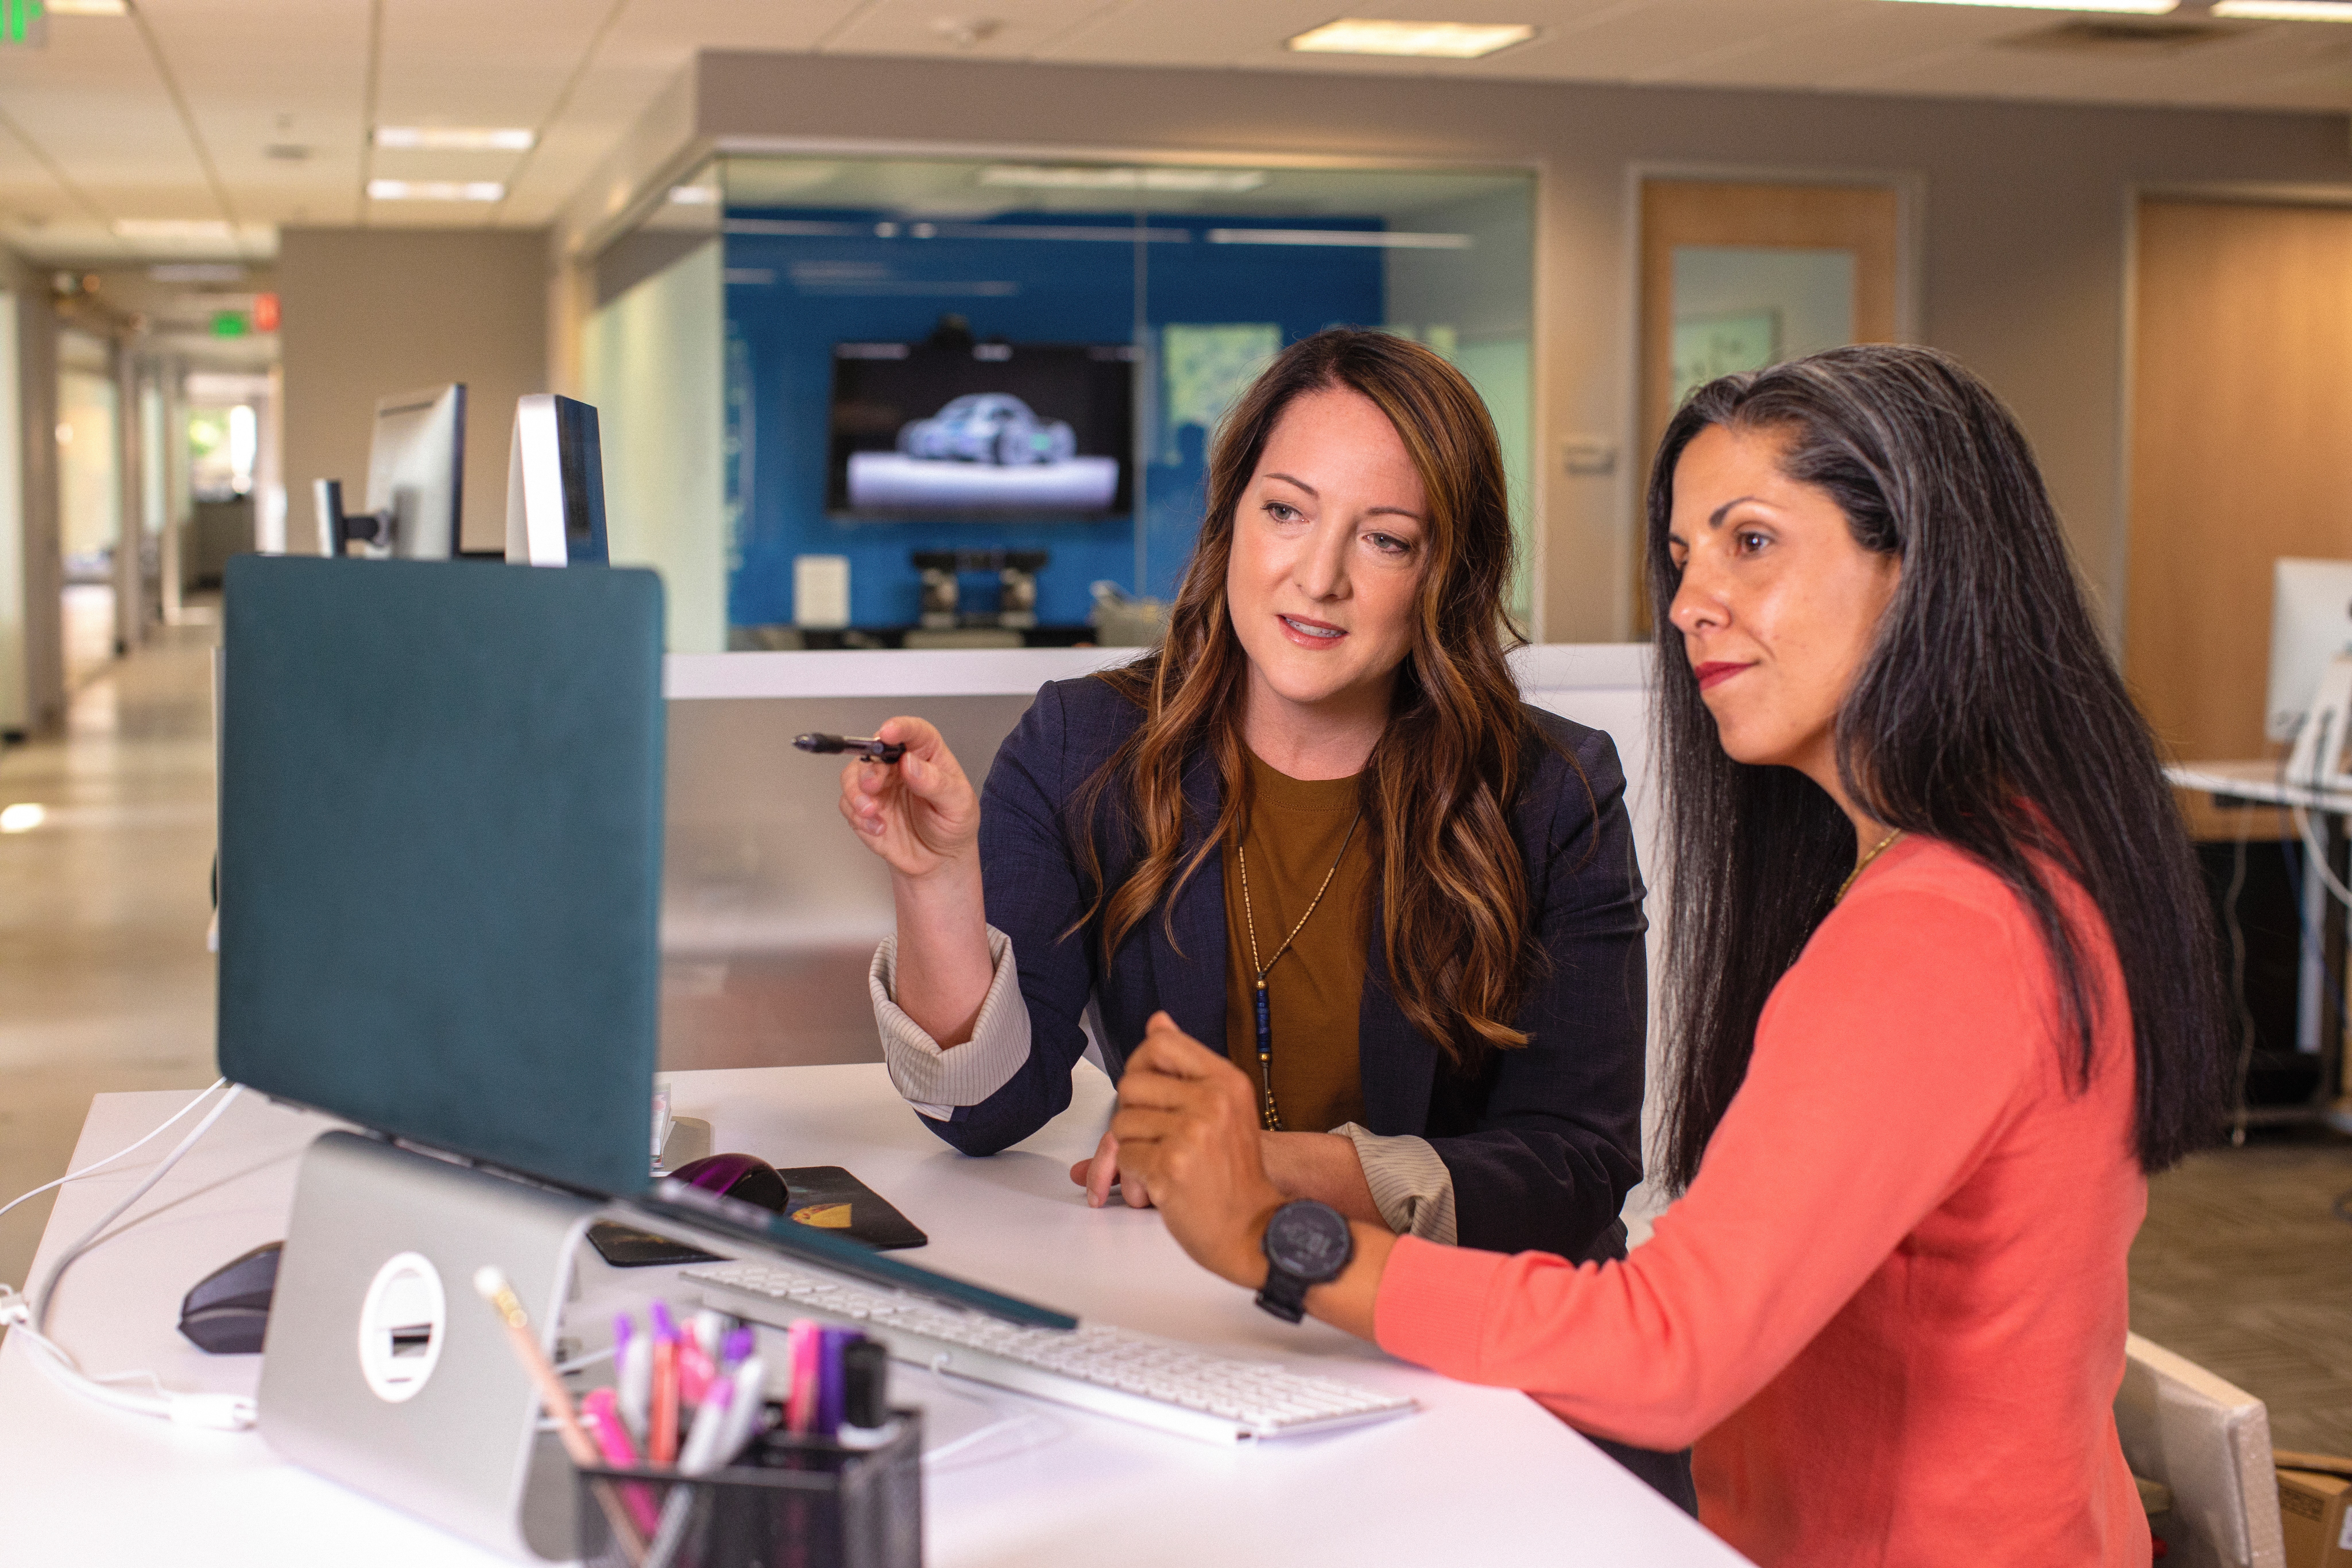 Imagem de duas mulheres em um escritório, na qual uma aponta para a tela de um laptop enquanto a outra observa o que está sendo exibido na tela.